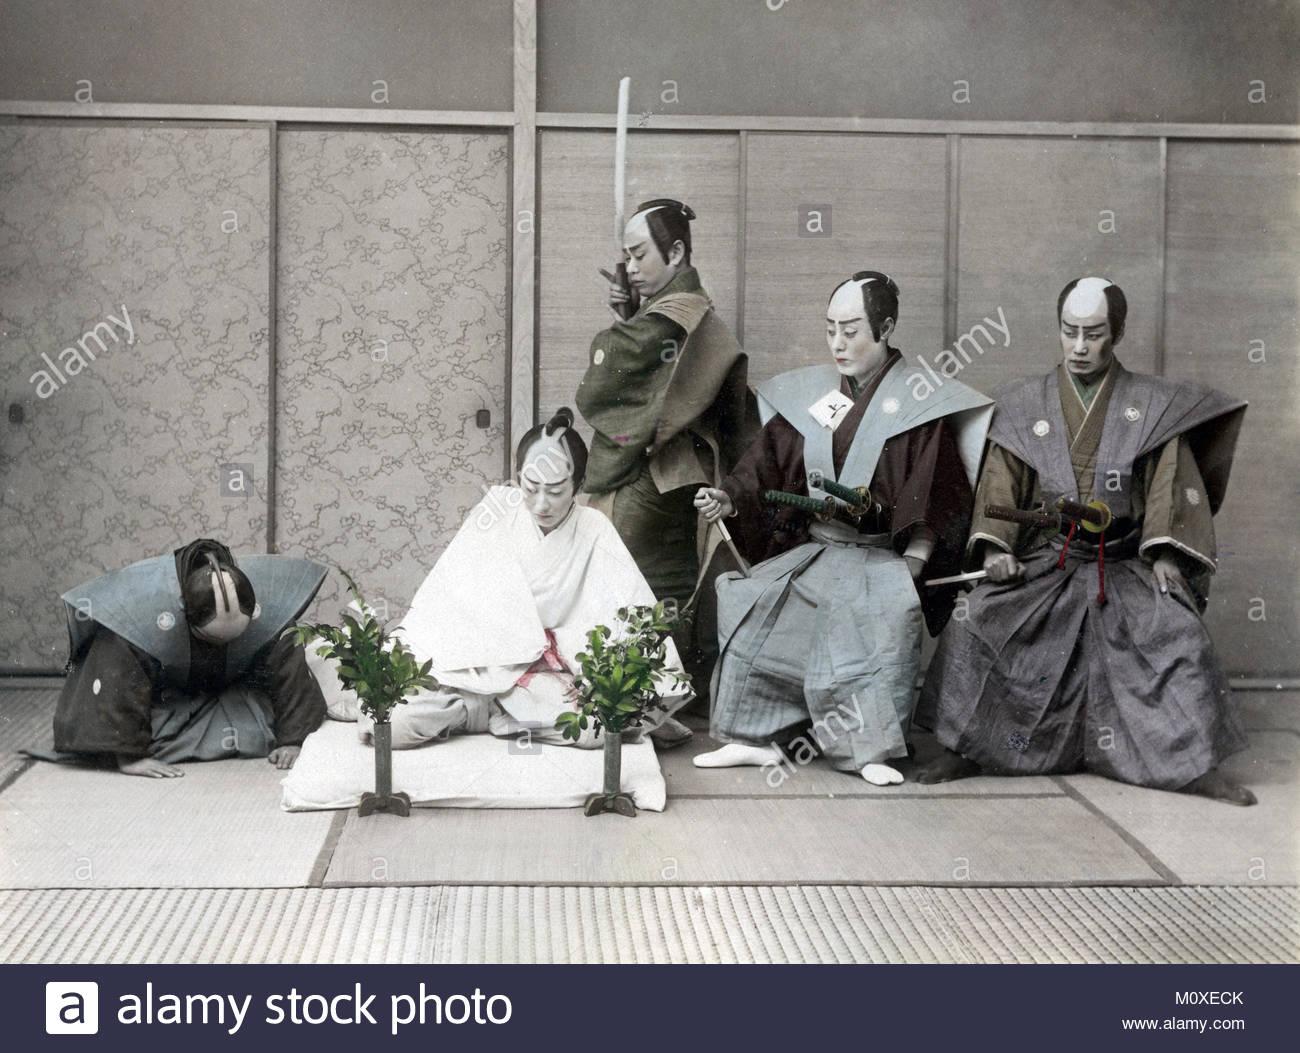 为何切腹成为日本武士"最壮绝"行为，其实也是当年从大唐学过去的